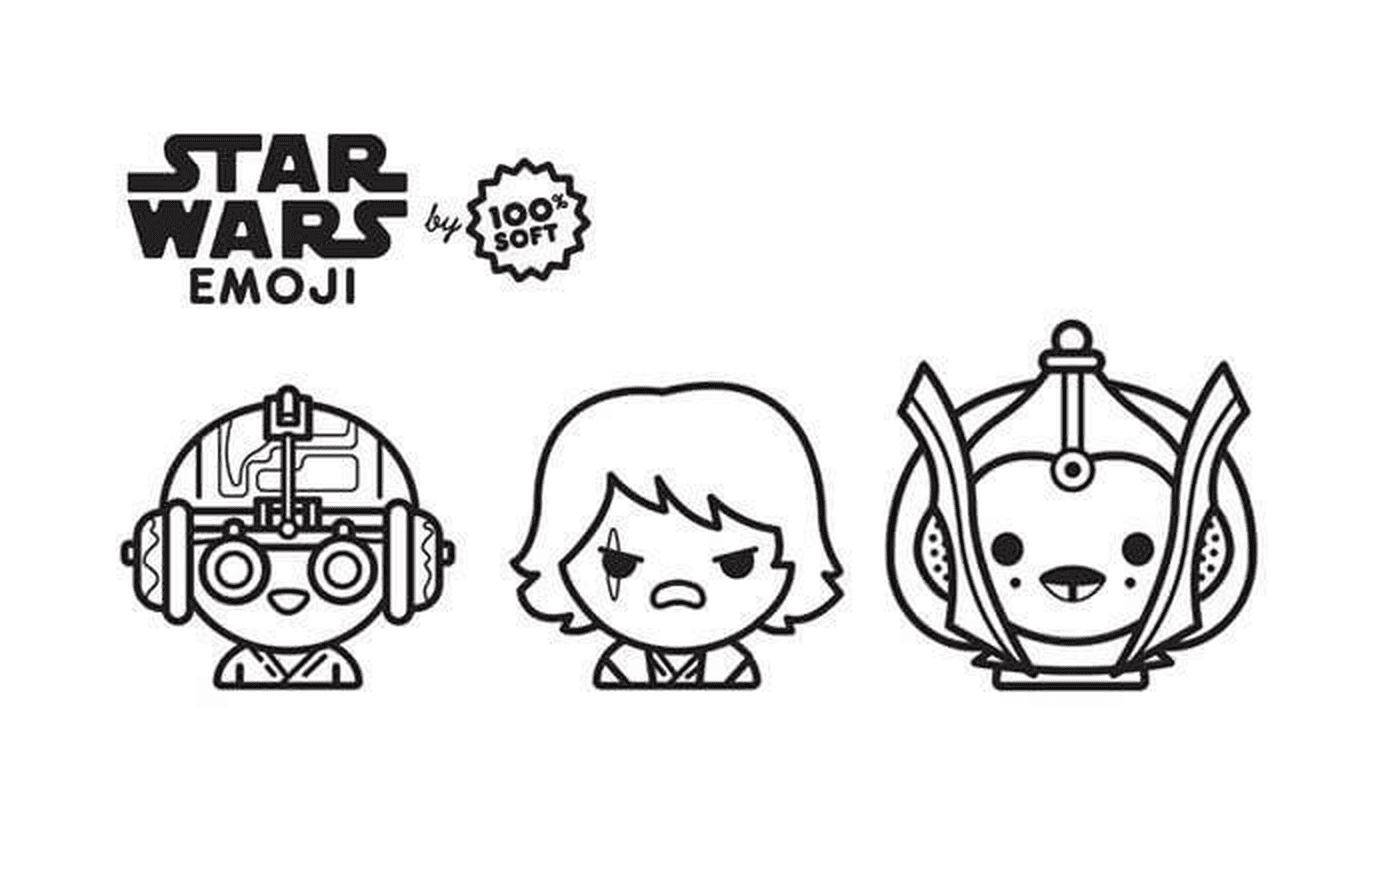  Emoji Star Wars saga, Anakin 